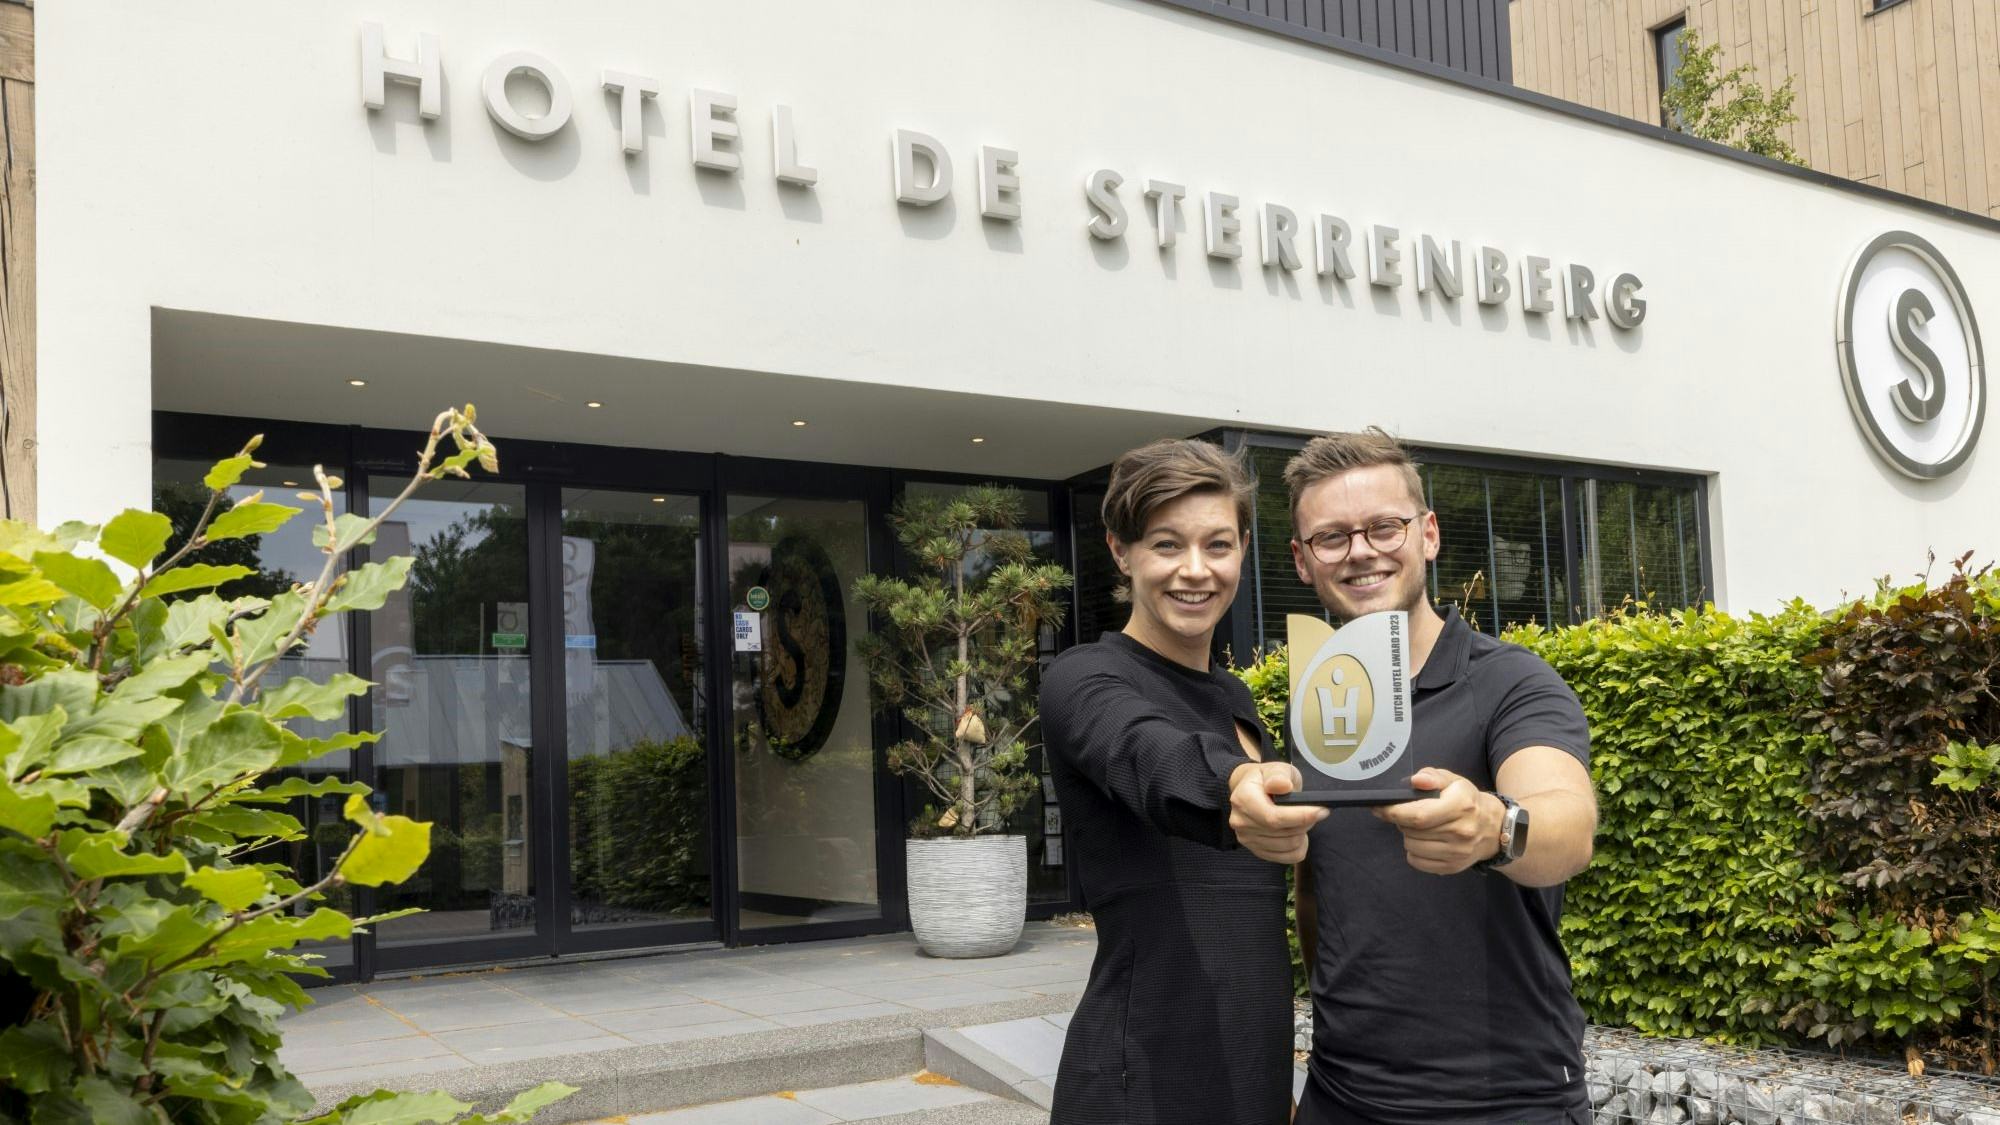 Hotel de Sterrenberg wil 't elk jaar 5 procent beter doen